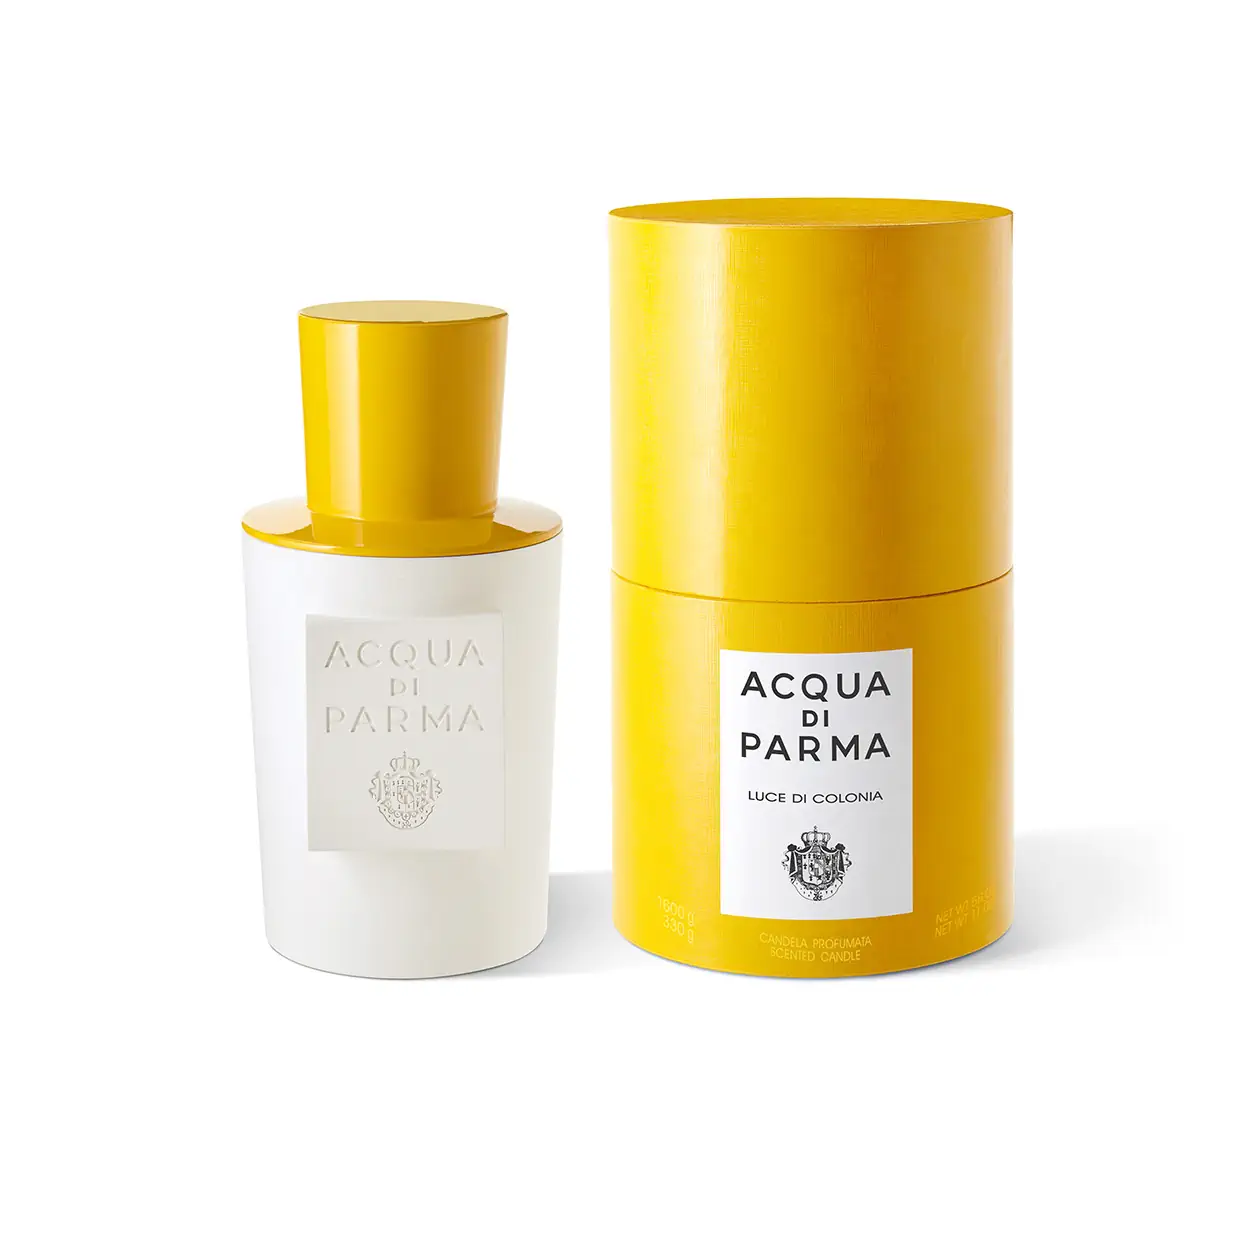 La bougie Chapeau! d'Acqua di Parma réimagine le parfum et le design